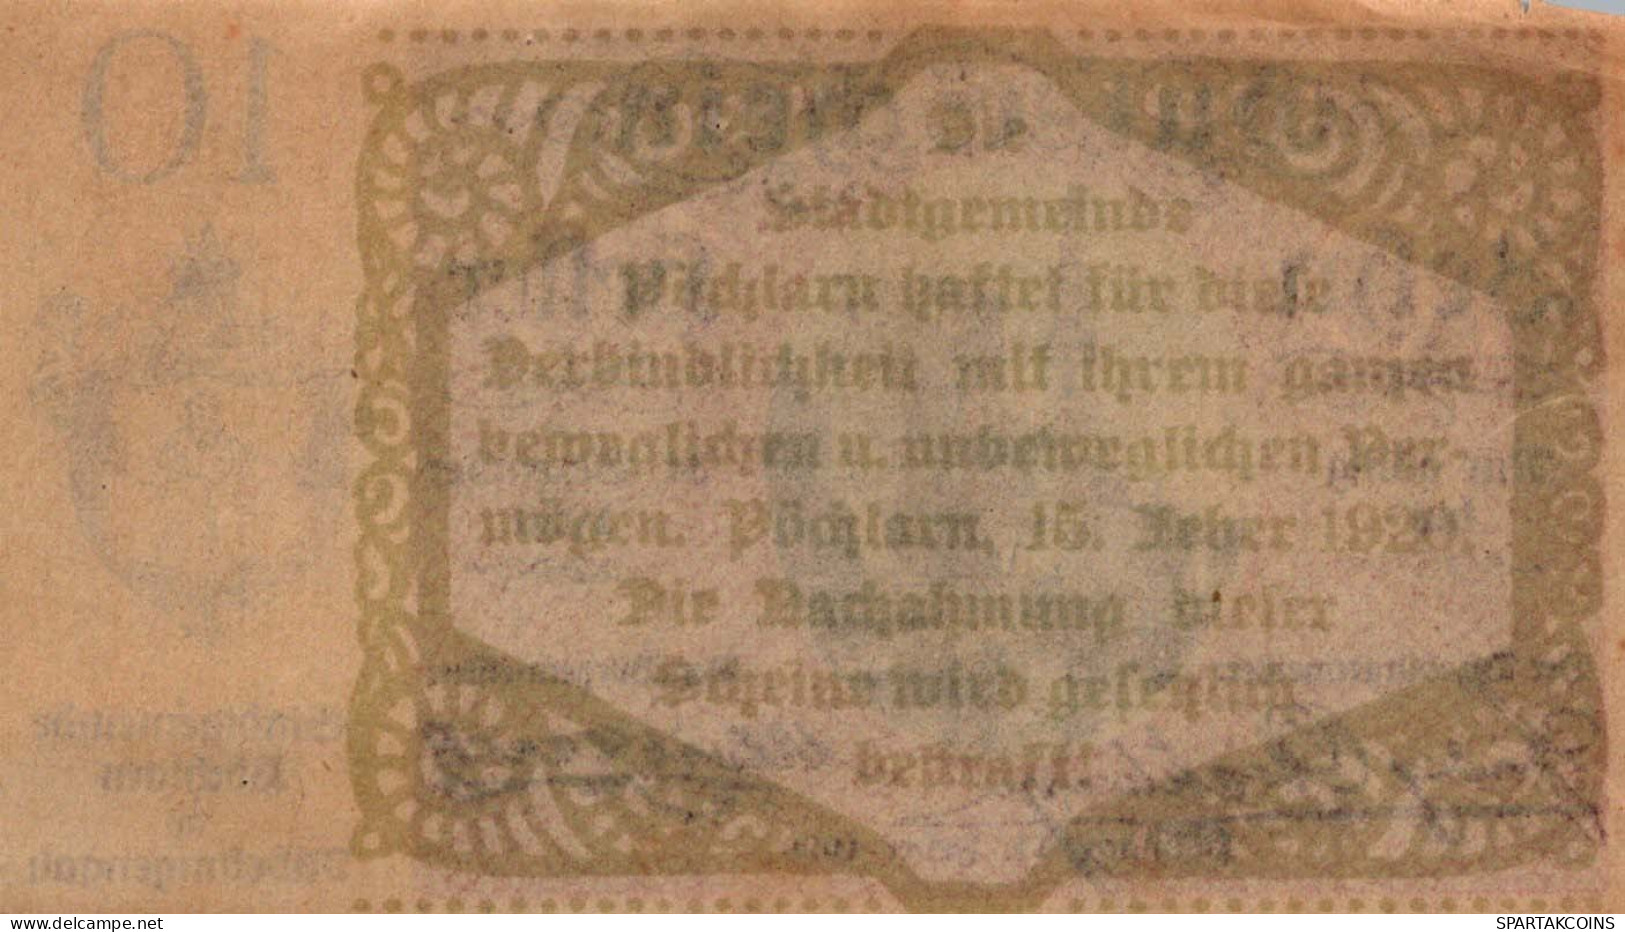 10 HELLER 1920 Stadt PoCHLARN Niedrigeren Österreich Notgeld Banknote #PE414 - Lokale Ausgaben